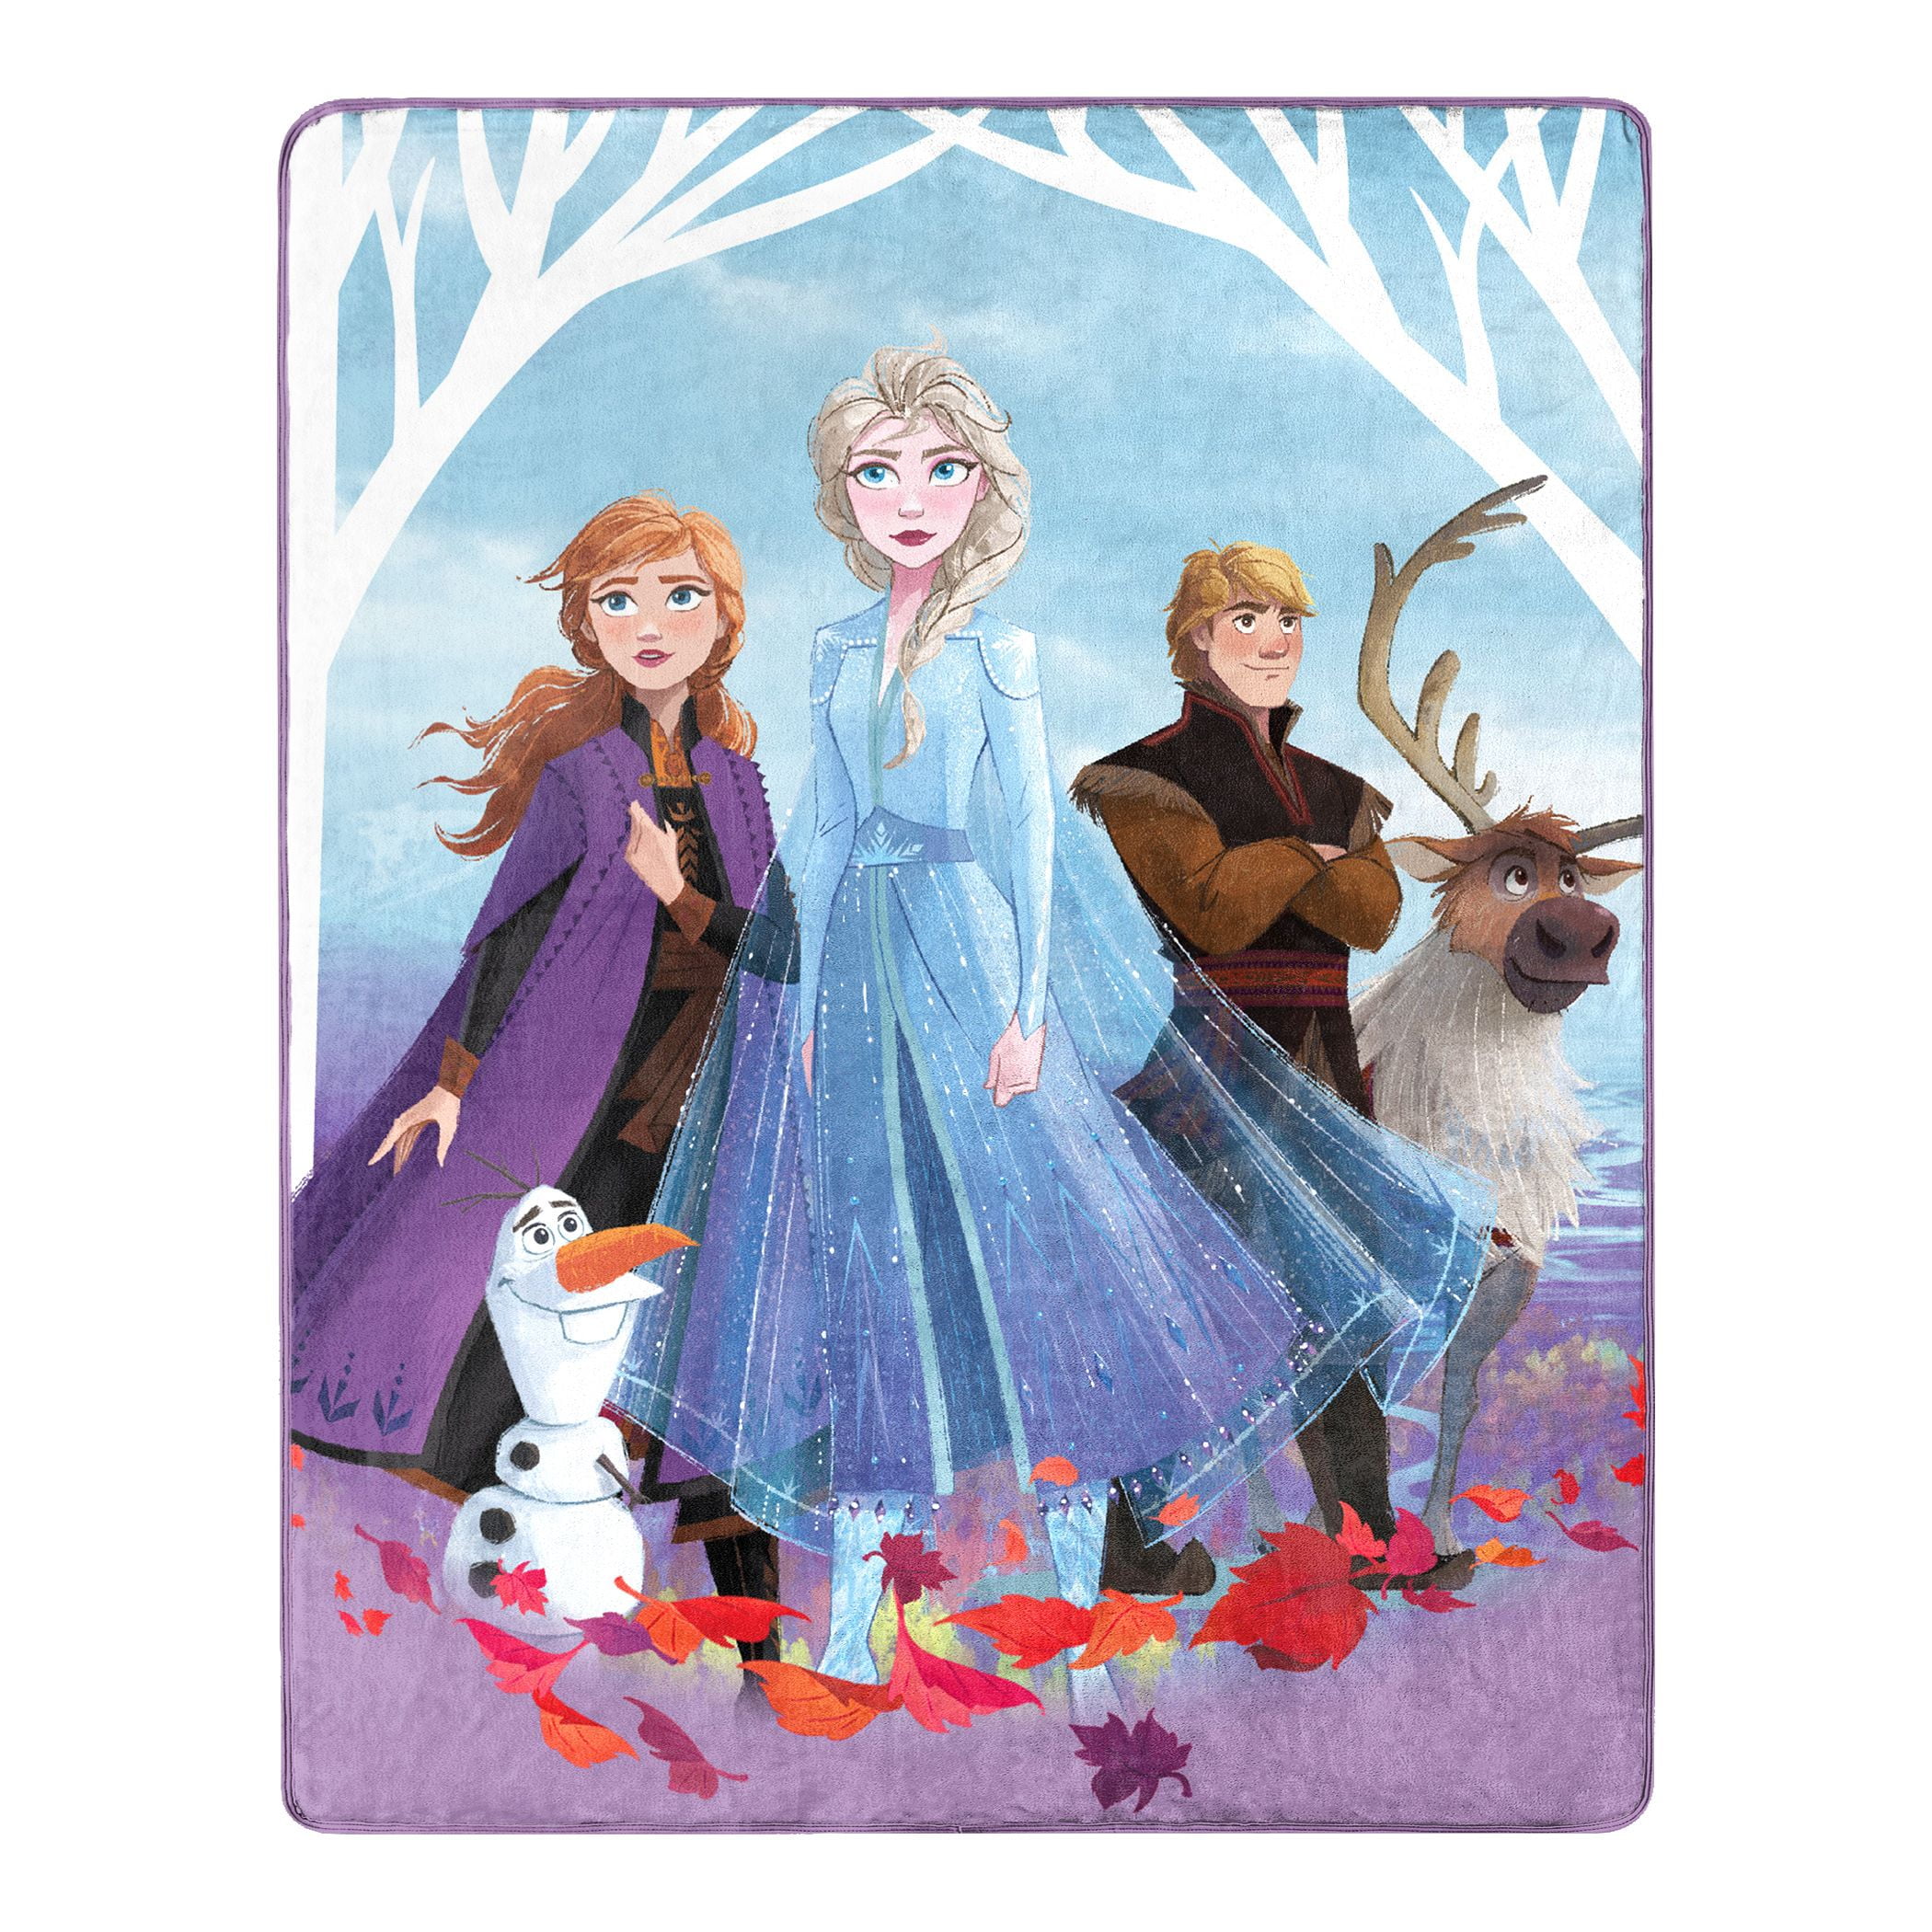 80x60 inch 60x50 inch // Frozen 2 Anna And Elsa Blanket // 40X30 inch